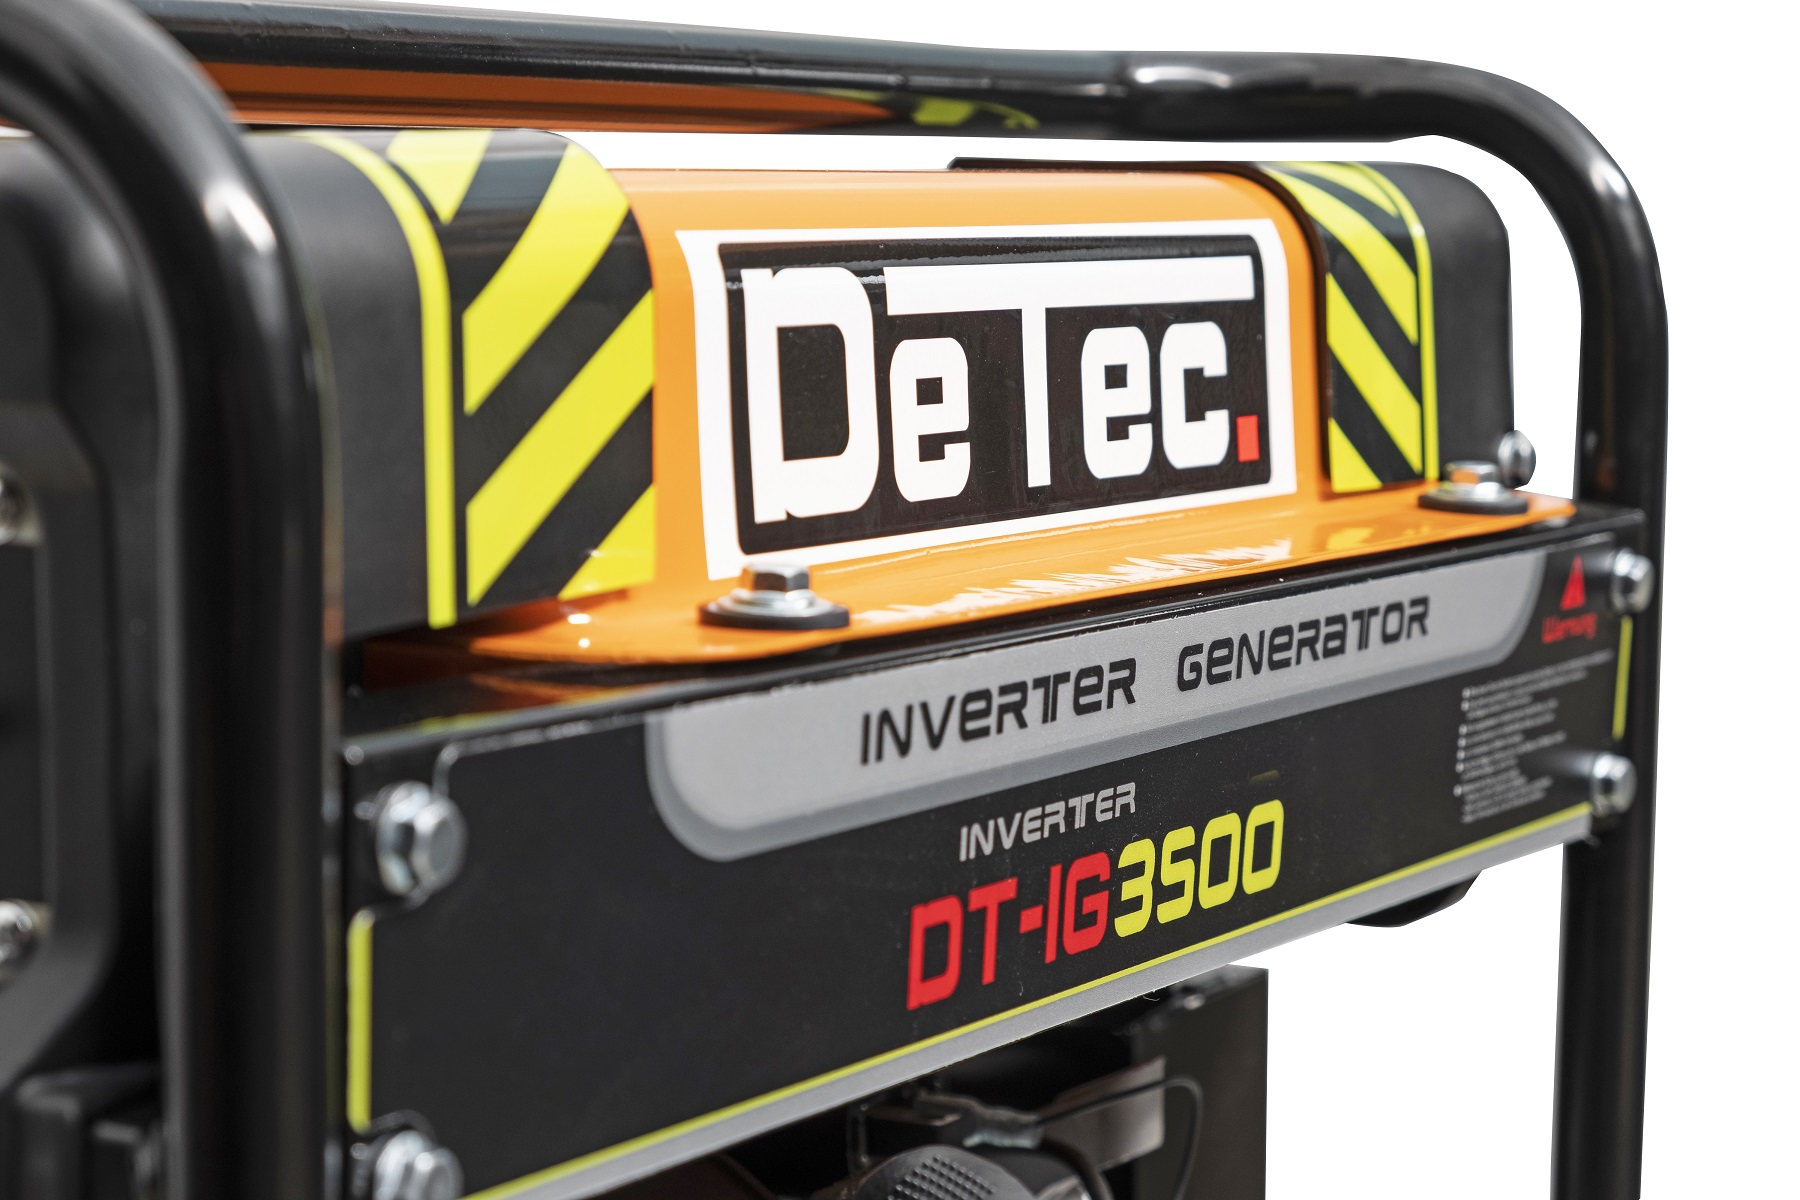 DeTec. DT-IG3500 Inverter Stromerzeuger 230V 3500 Watt